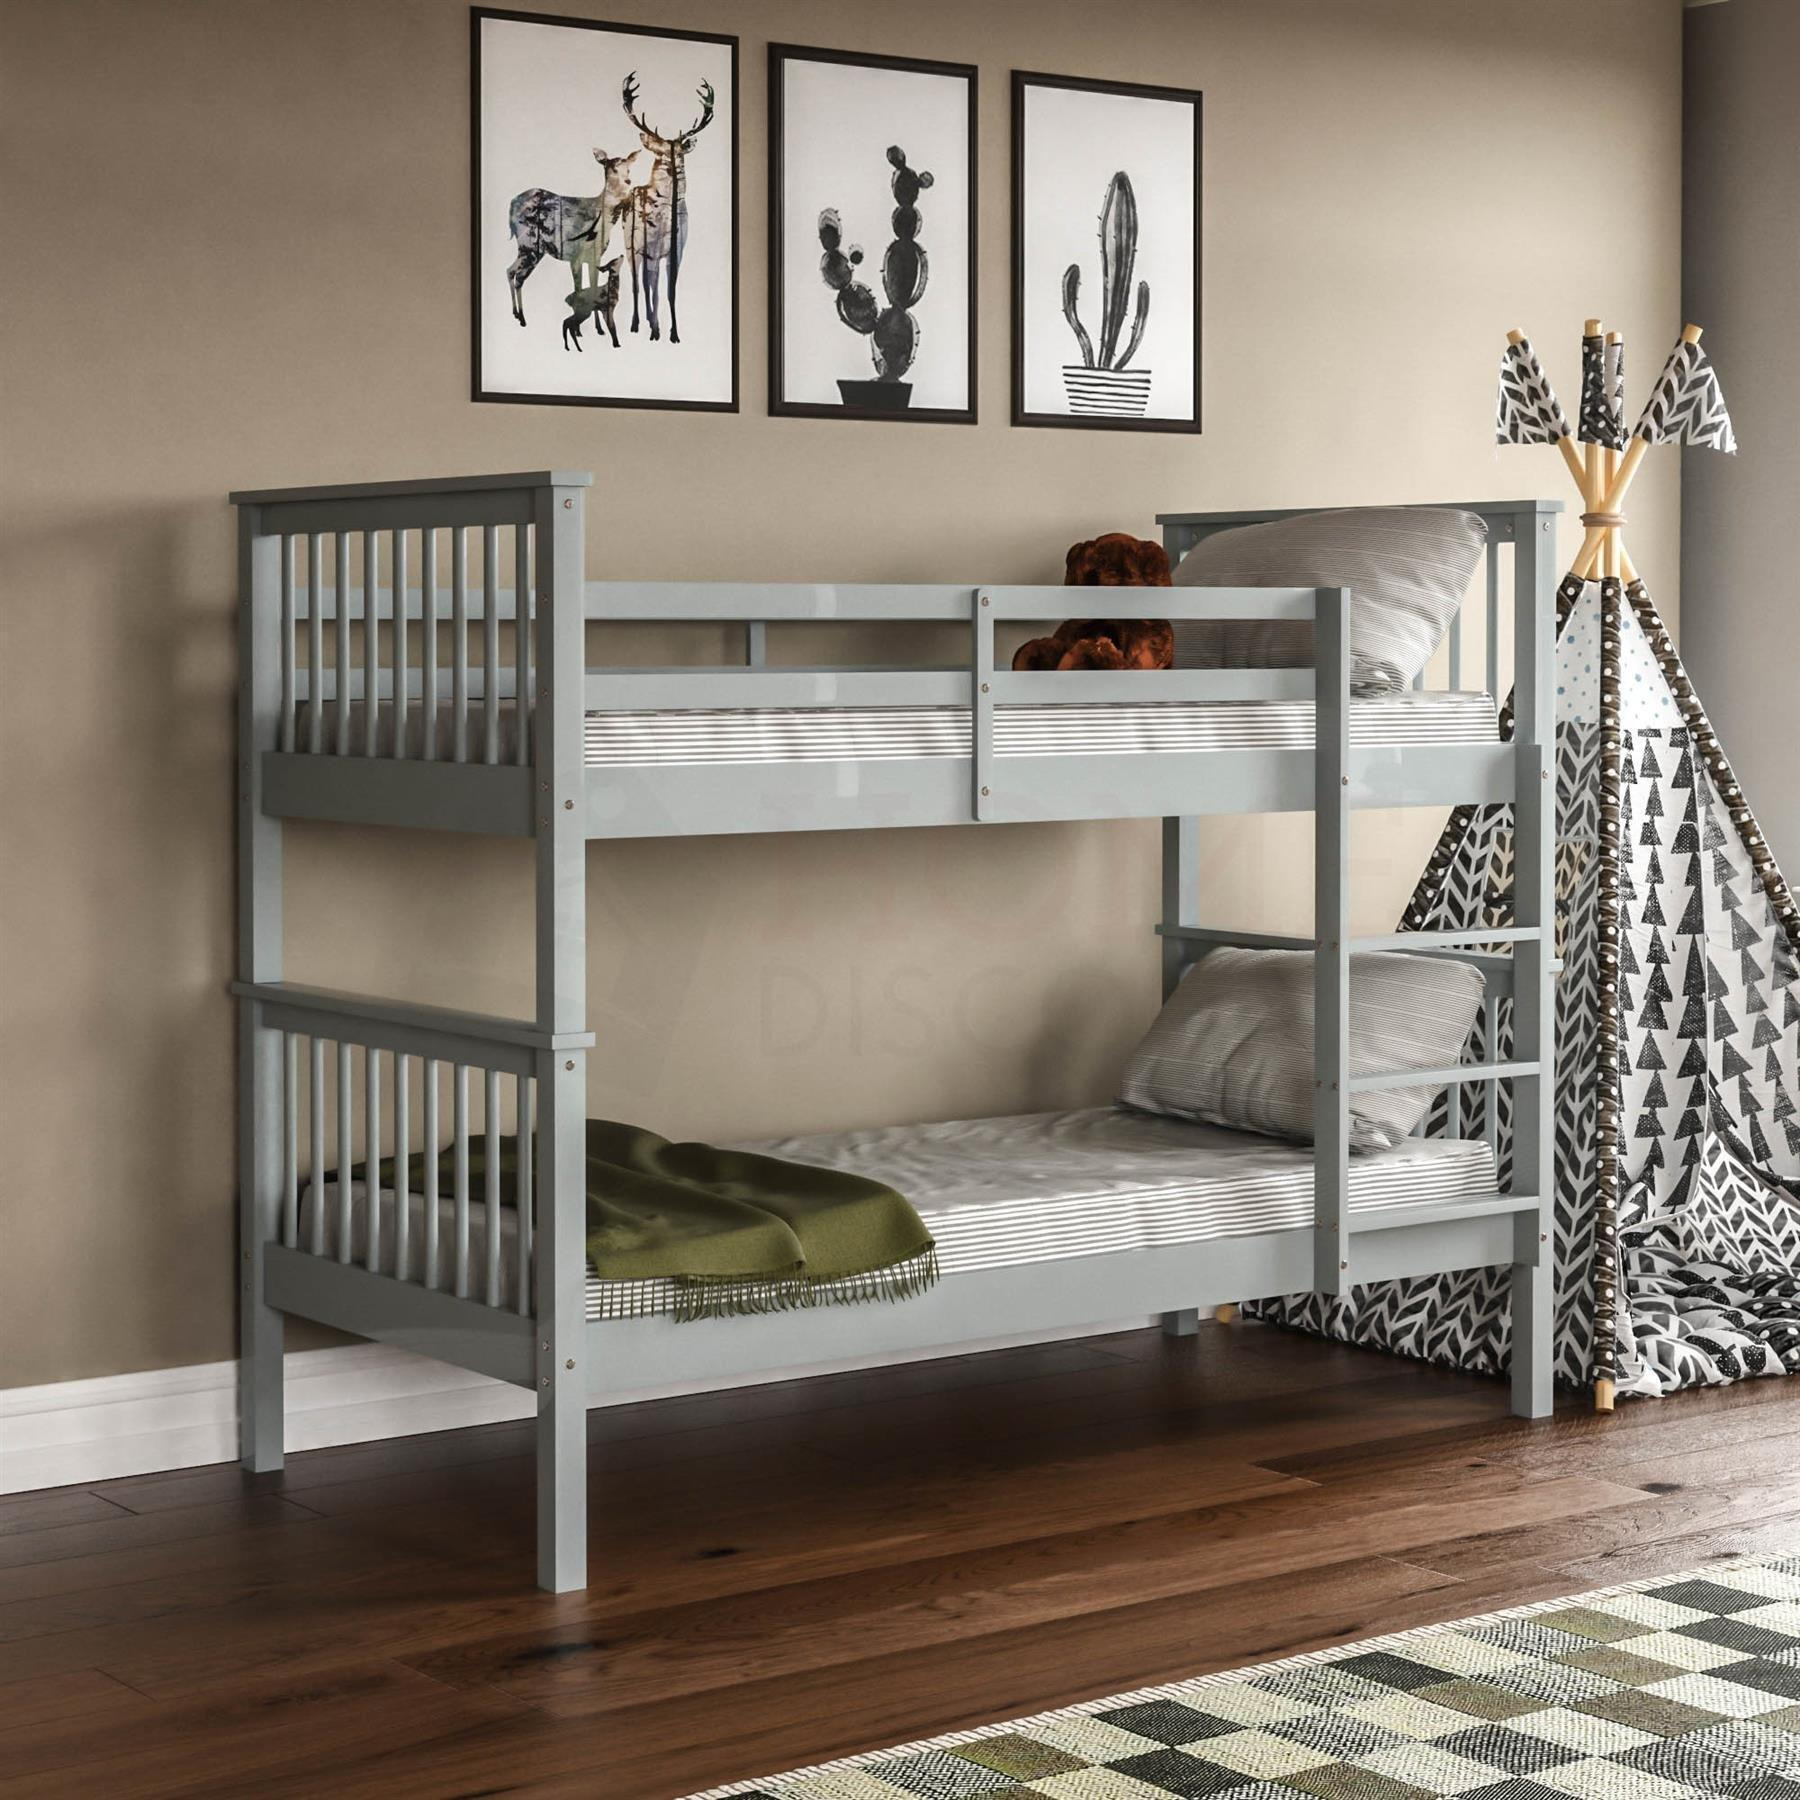 Vida Designs Milan Bunk Bed Frame Bedroom Furniture - image 1